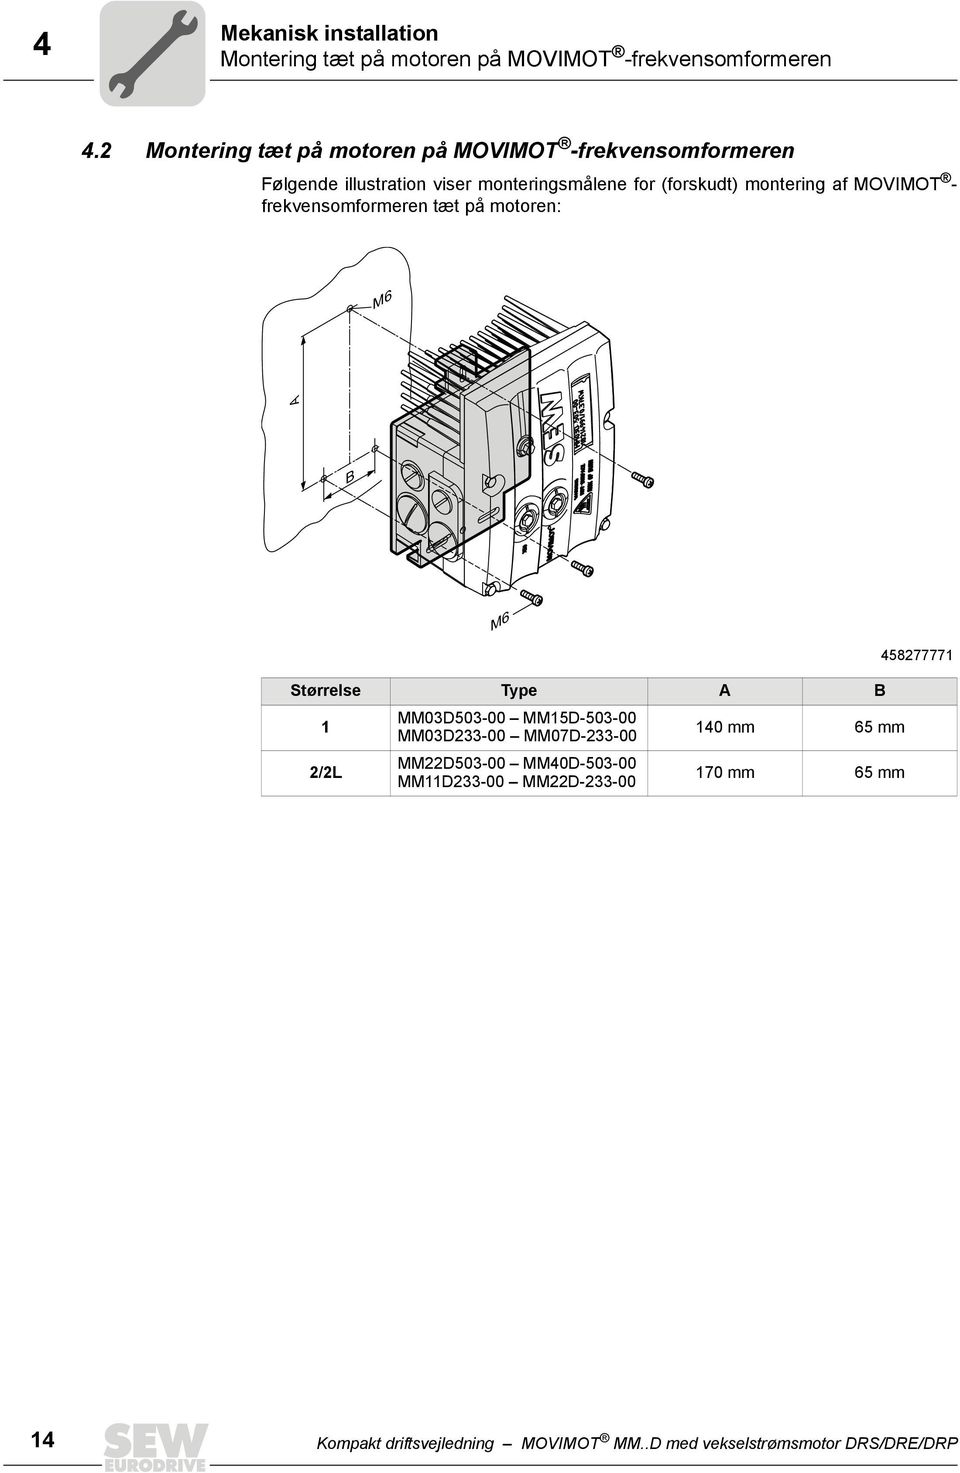 montering af MOVIMOT - frekvensomformeren tæt på motoren: M6 A B M6 Størrelse Type A B 1 2/2L MM03D503-00 MM15D-503-00